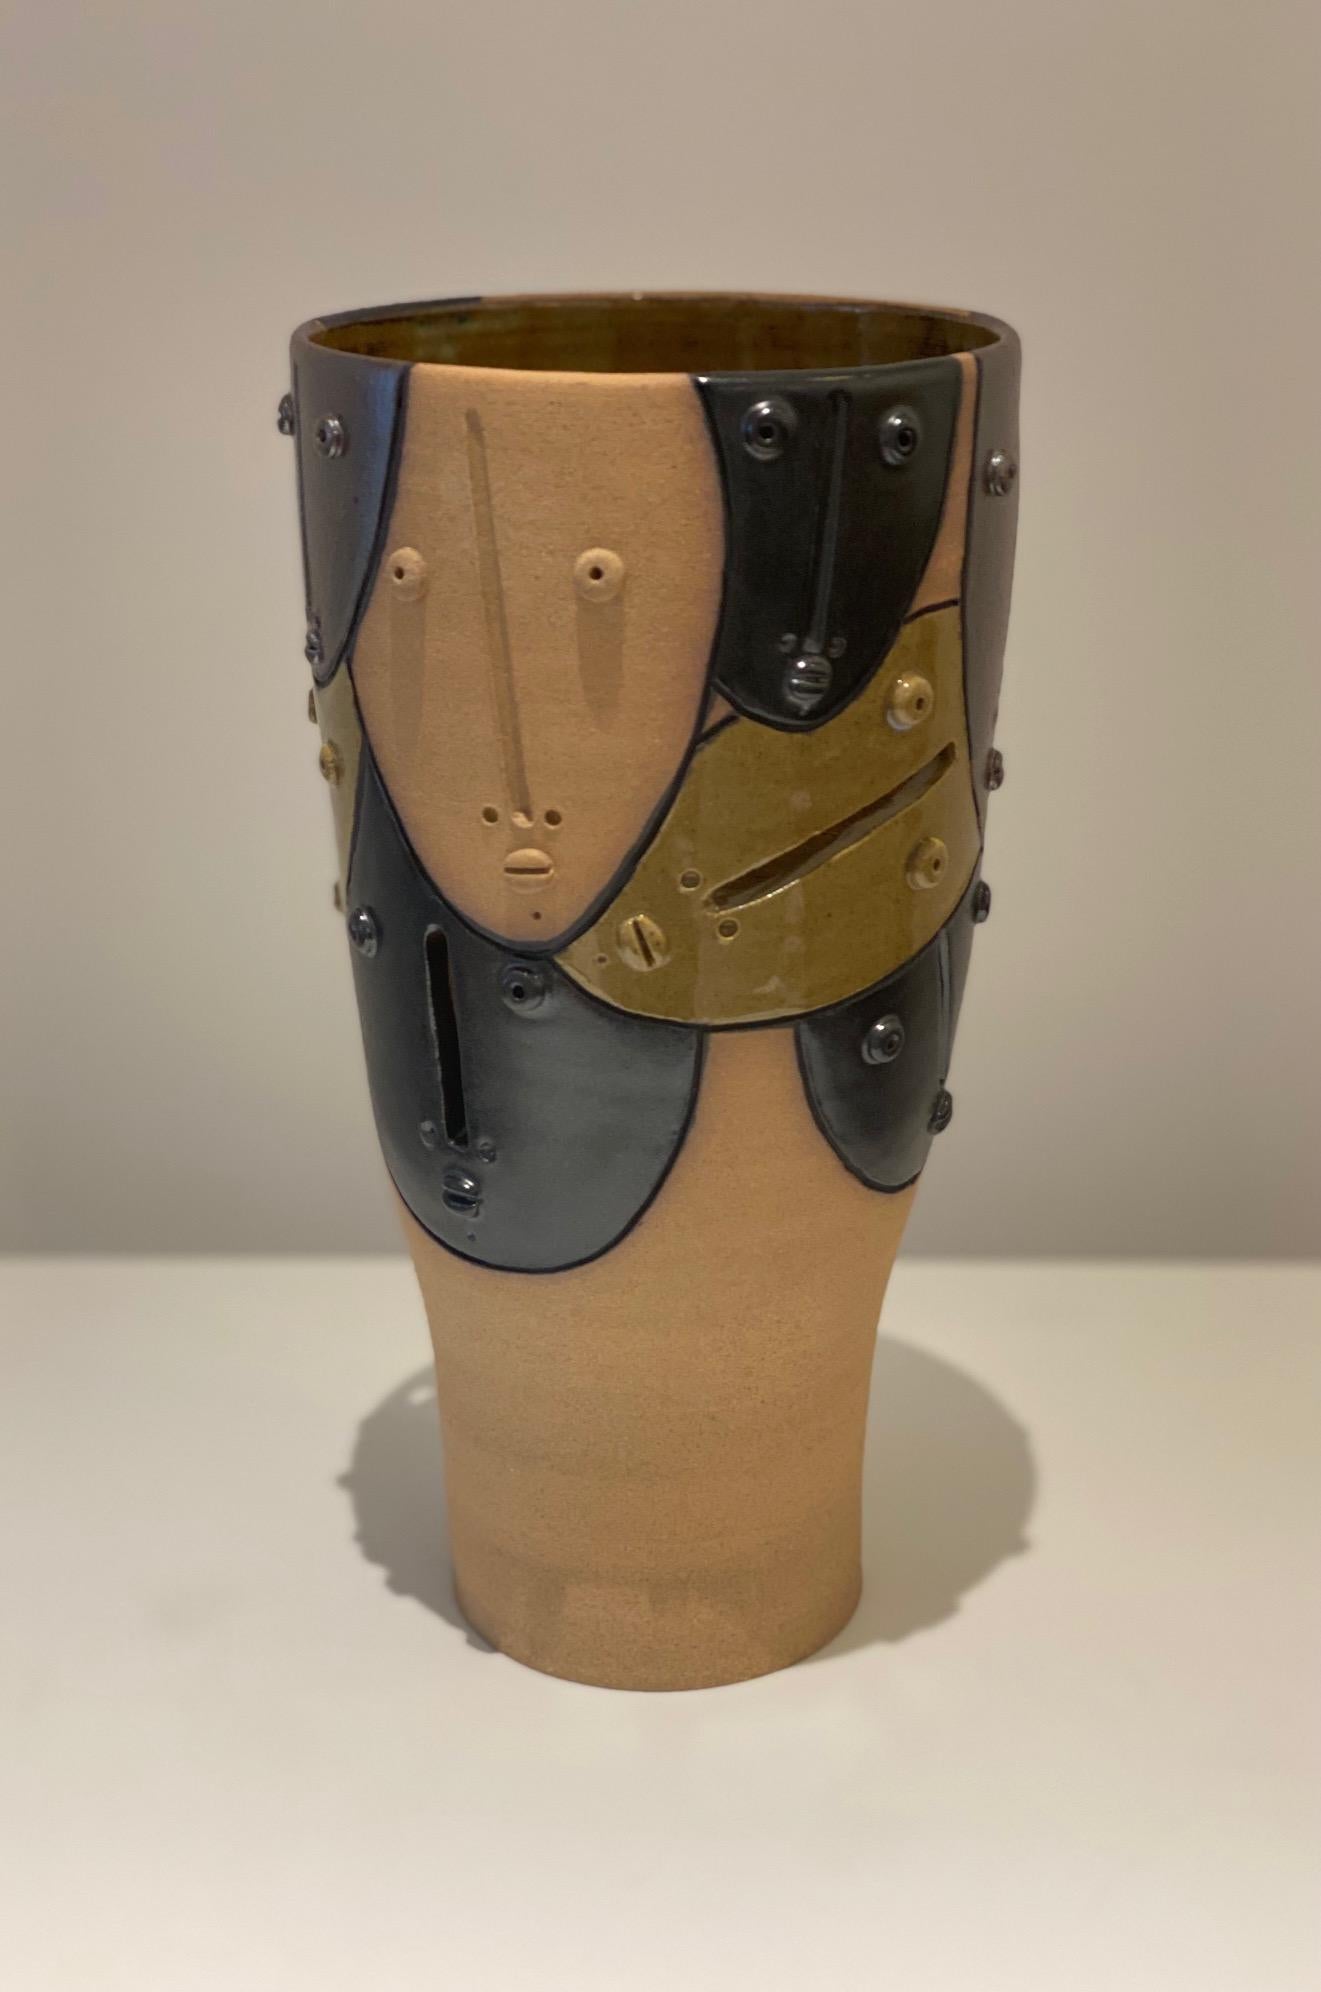 Dekorative Vase aus Ton mit stilisierten Gesichtern, handgefertigt und signiert vom französischen Keramiker Dalo
Steingut mit satinierter schwarzer/grauer/beiger Emaillierung. Einzigartig
Maße: H 24 cm x L 13 cm.
Eine größere Vase ist ebenfalls